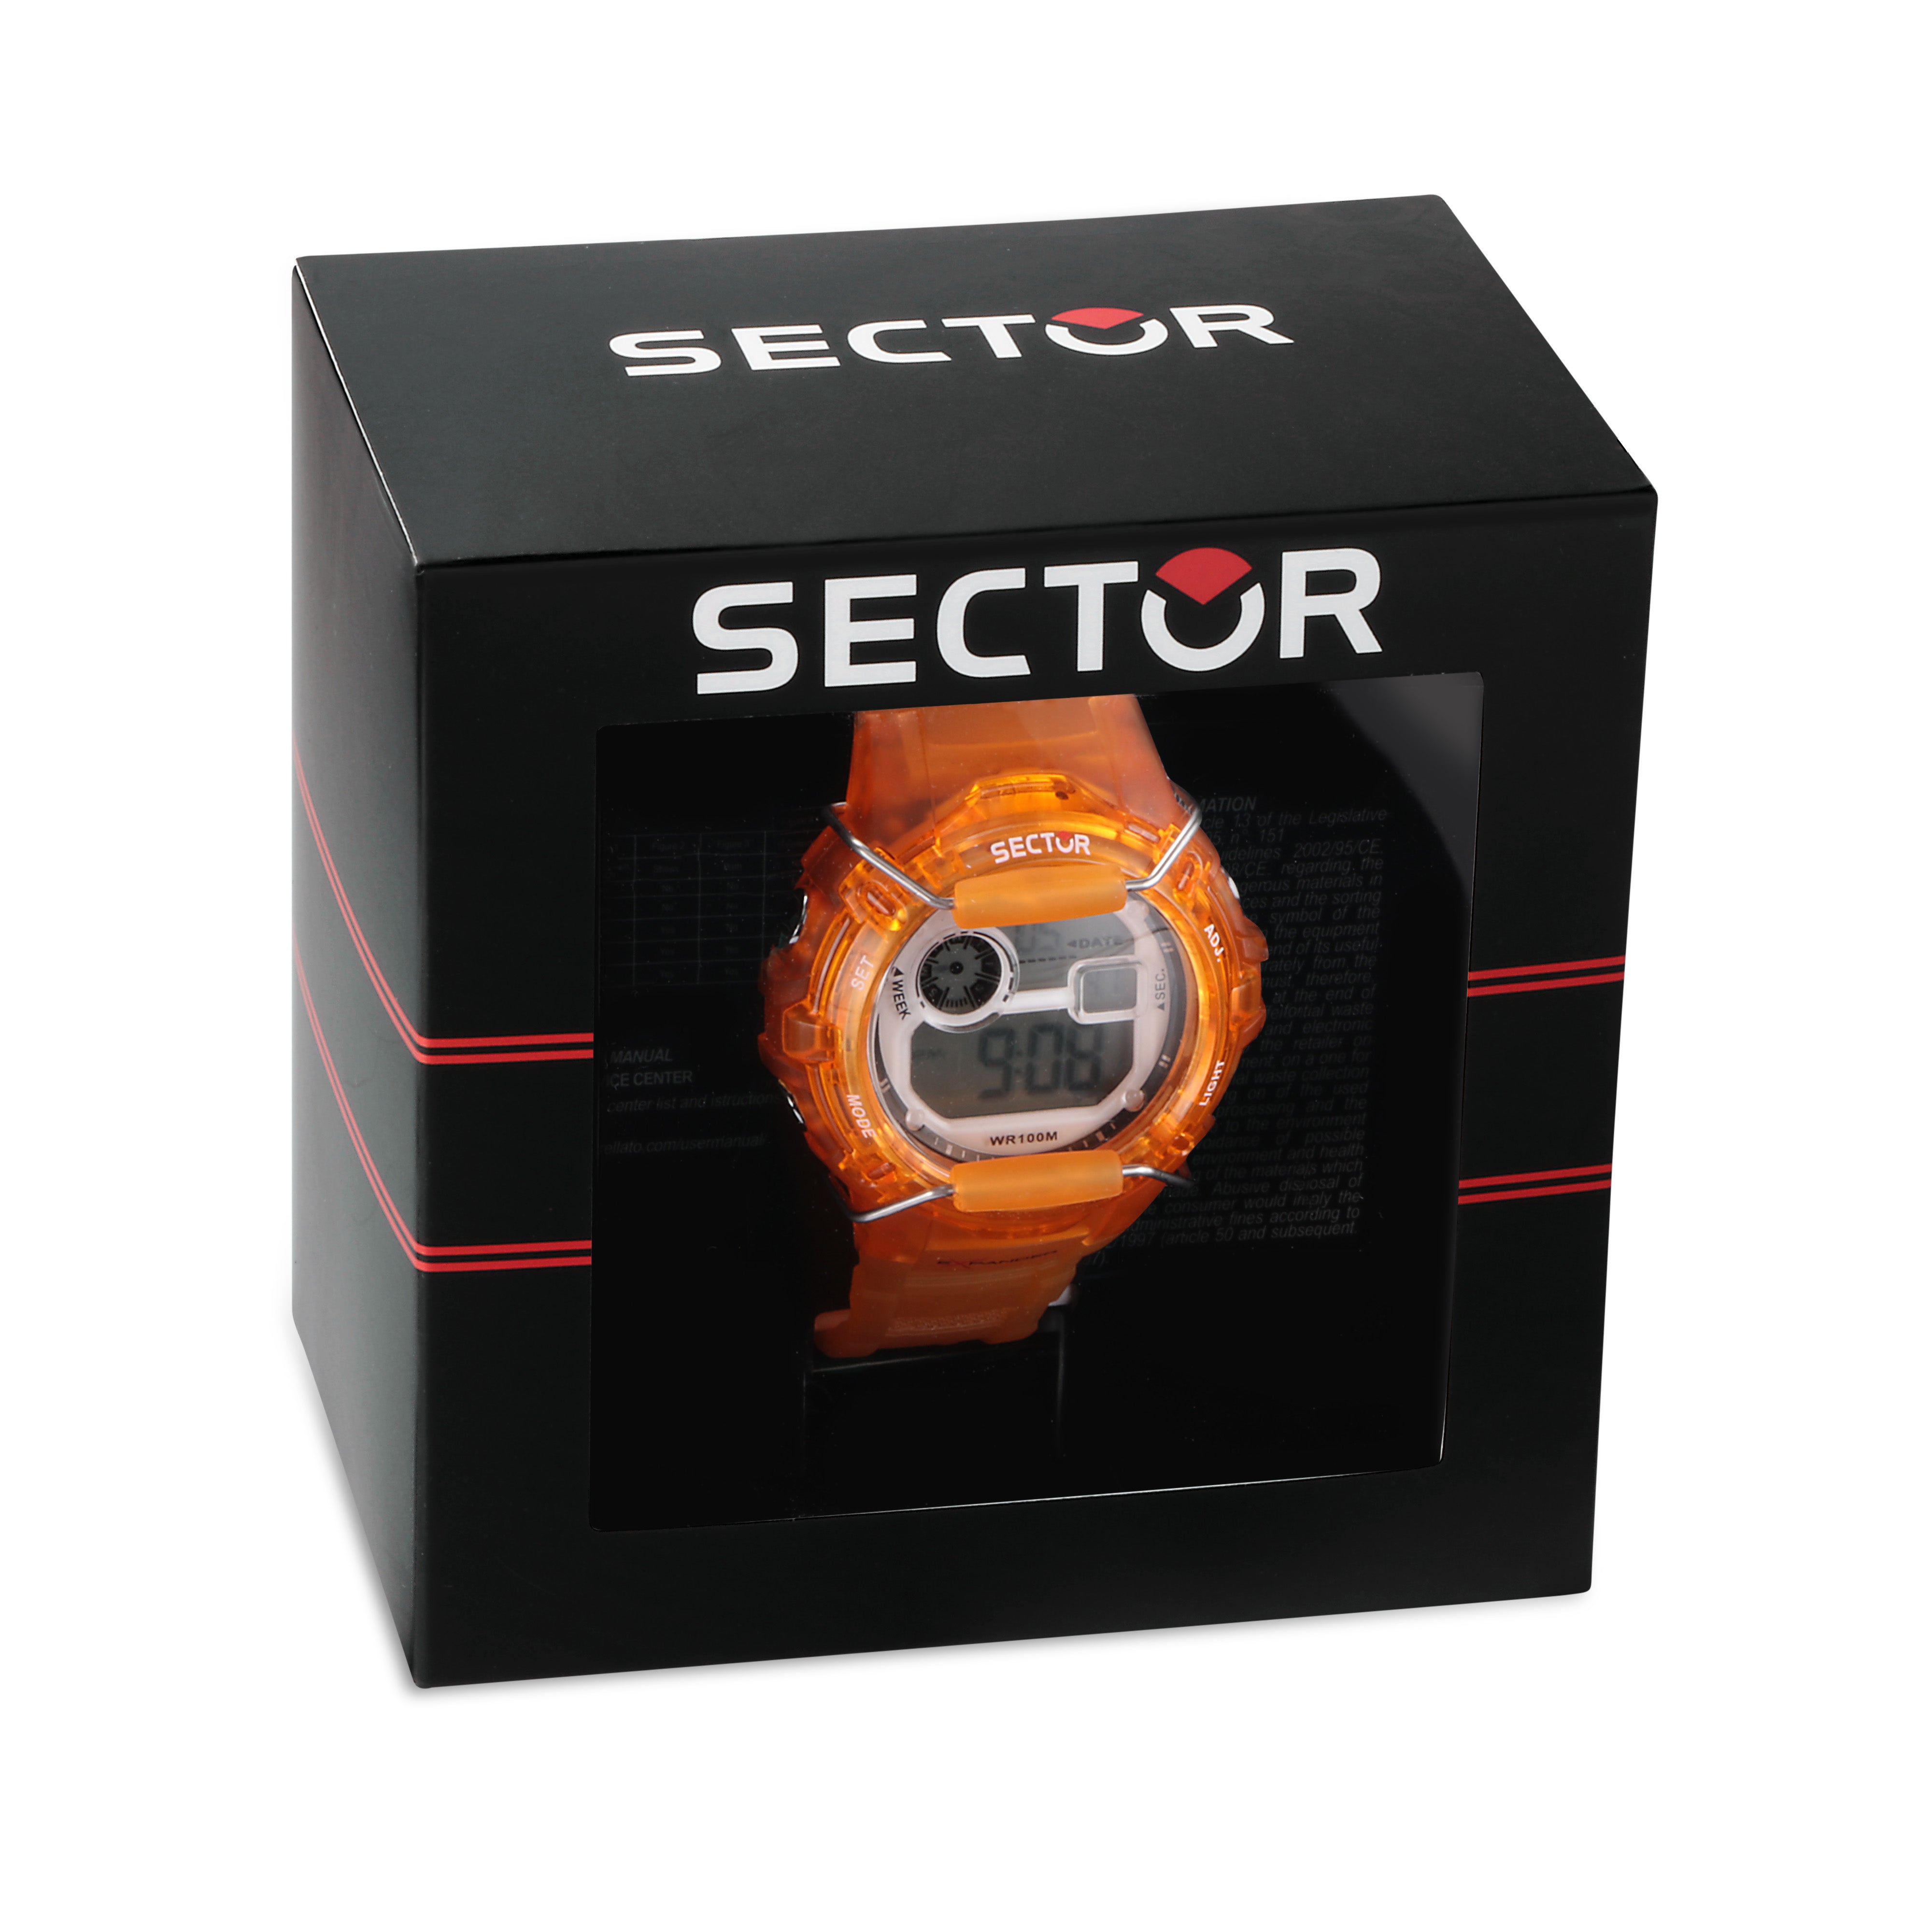 Sector EX-05 Orange Digital Watch R3251526002